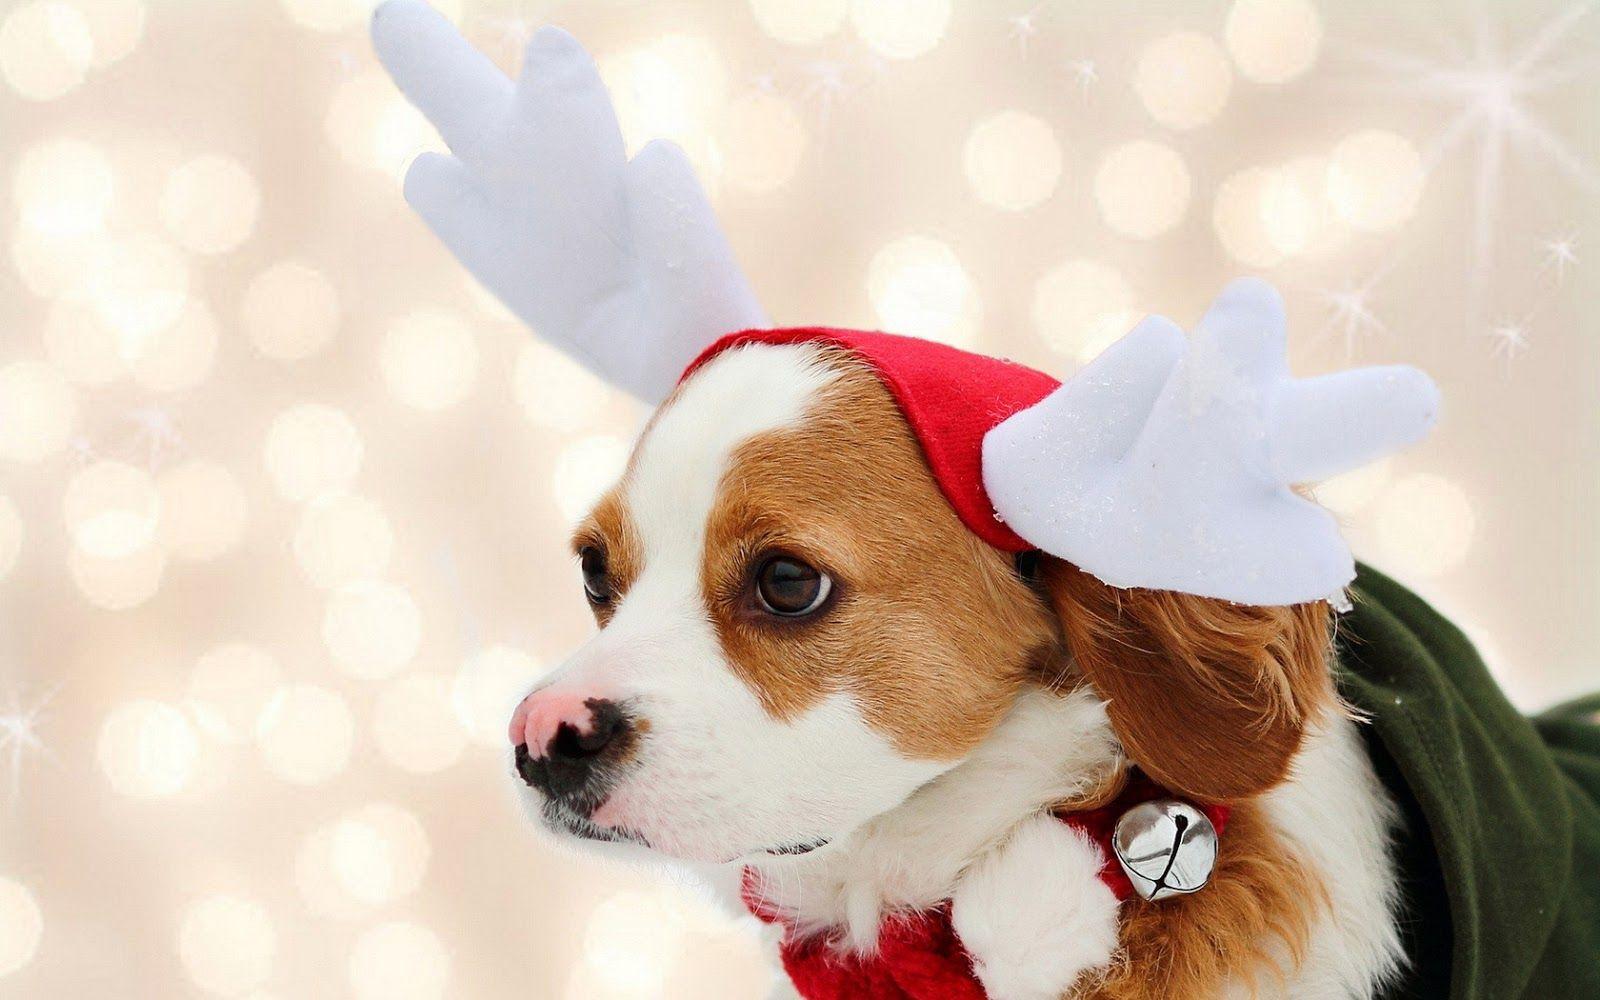 Chào mừng mùa giáng sinh với hình ảnh của chú chó cưng giáng sinh đáng yêu! Bối cảnh sử dụng là nền đỏ Giáng Sinh truyền thống, tạo cảm giác ấm cúng và tình yêu. Chú chó nhỏ bé này đáng yêu và dễ thương với chiếc mũ Noel trên đầu và chiếc vòng cổ kiêu kỳ. Hãy tưởng tượng chú chó này đang chờ đón bạn để tận hưởng mùa giáng sinh năm nay như thế nào nhé!